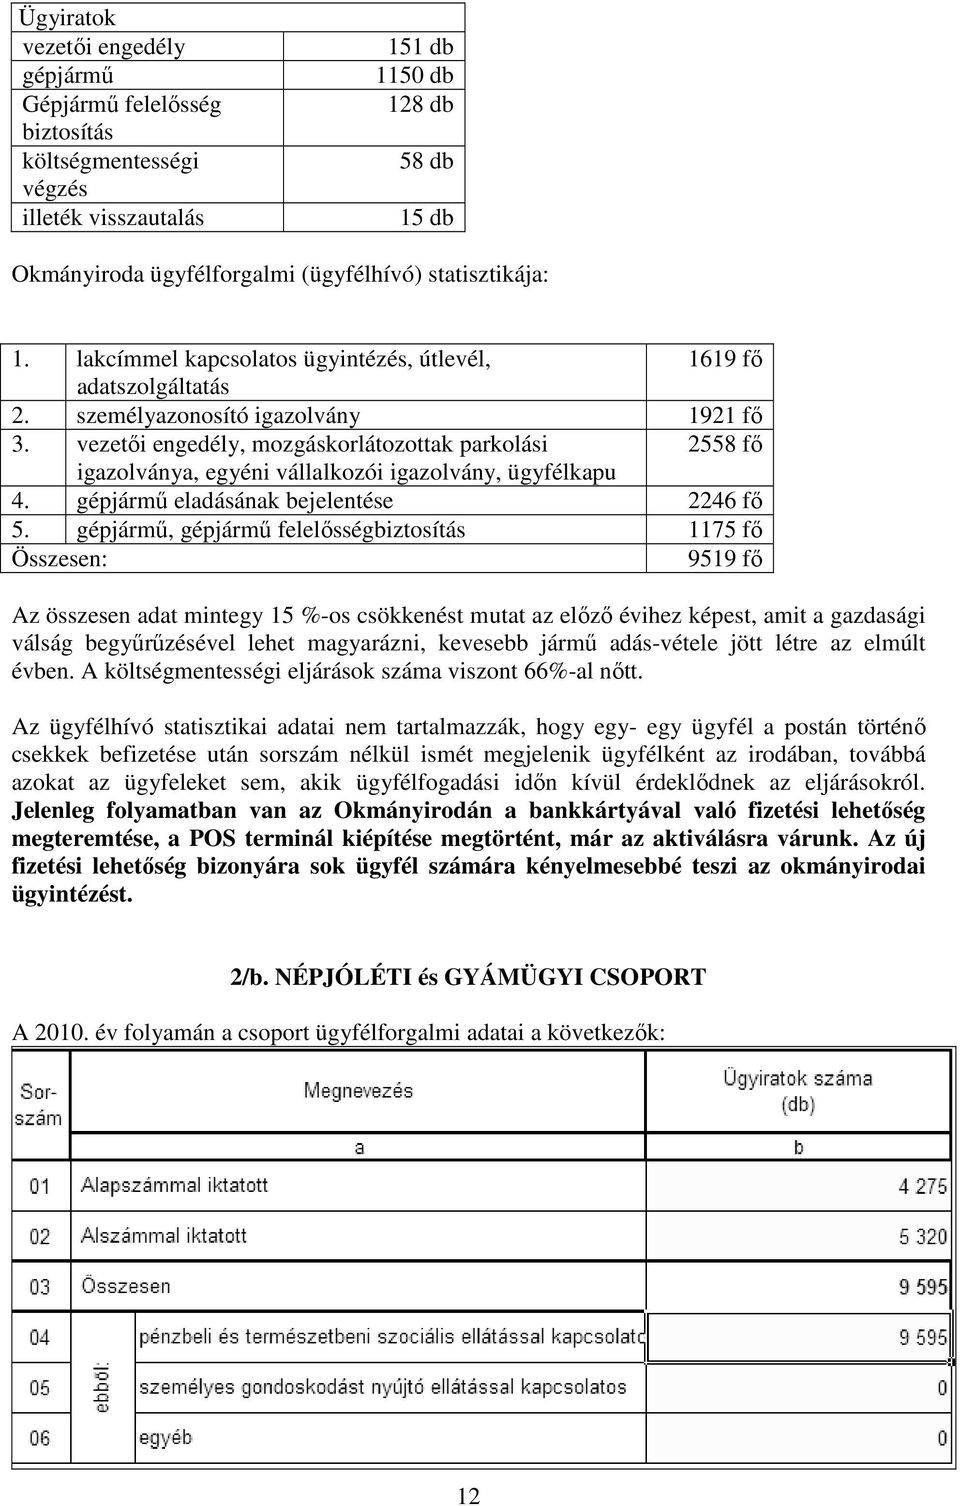 vezetıi engedély, mozgáskorlátozottak parkolási 2558 fı igazolványa, egyéni vállalkozói igazolvány, ügyfélkapu 4. gépjármő eladásának bejelentése 2246 fı 5.